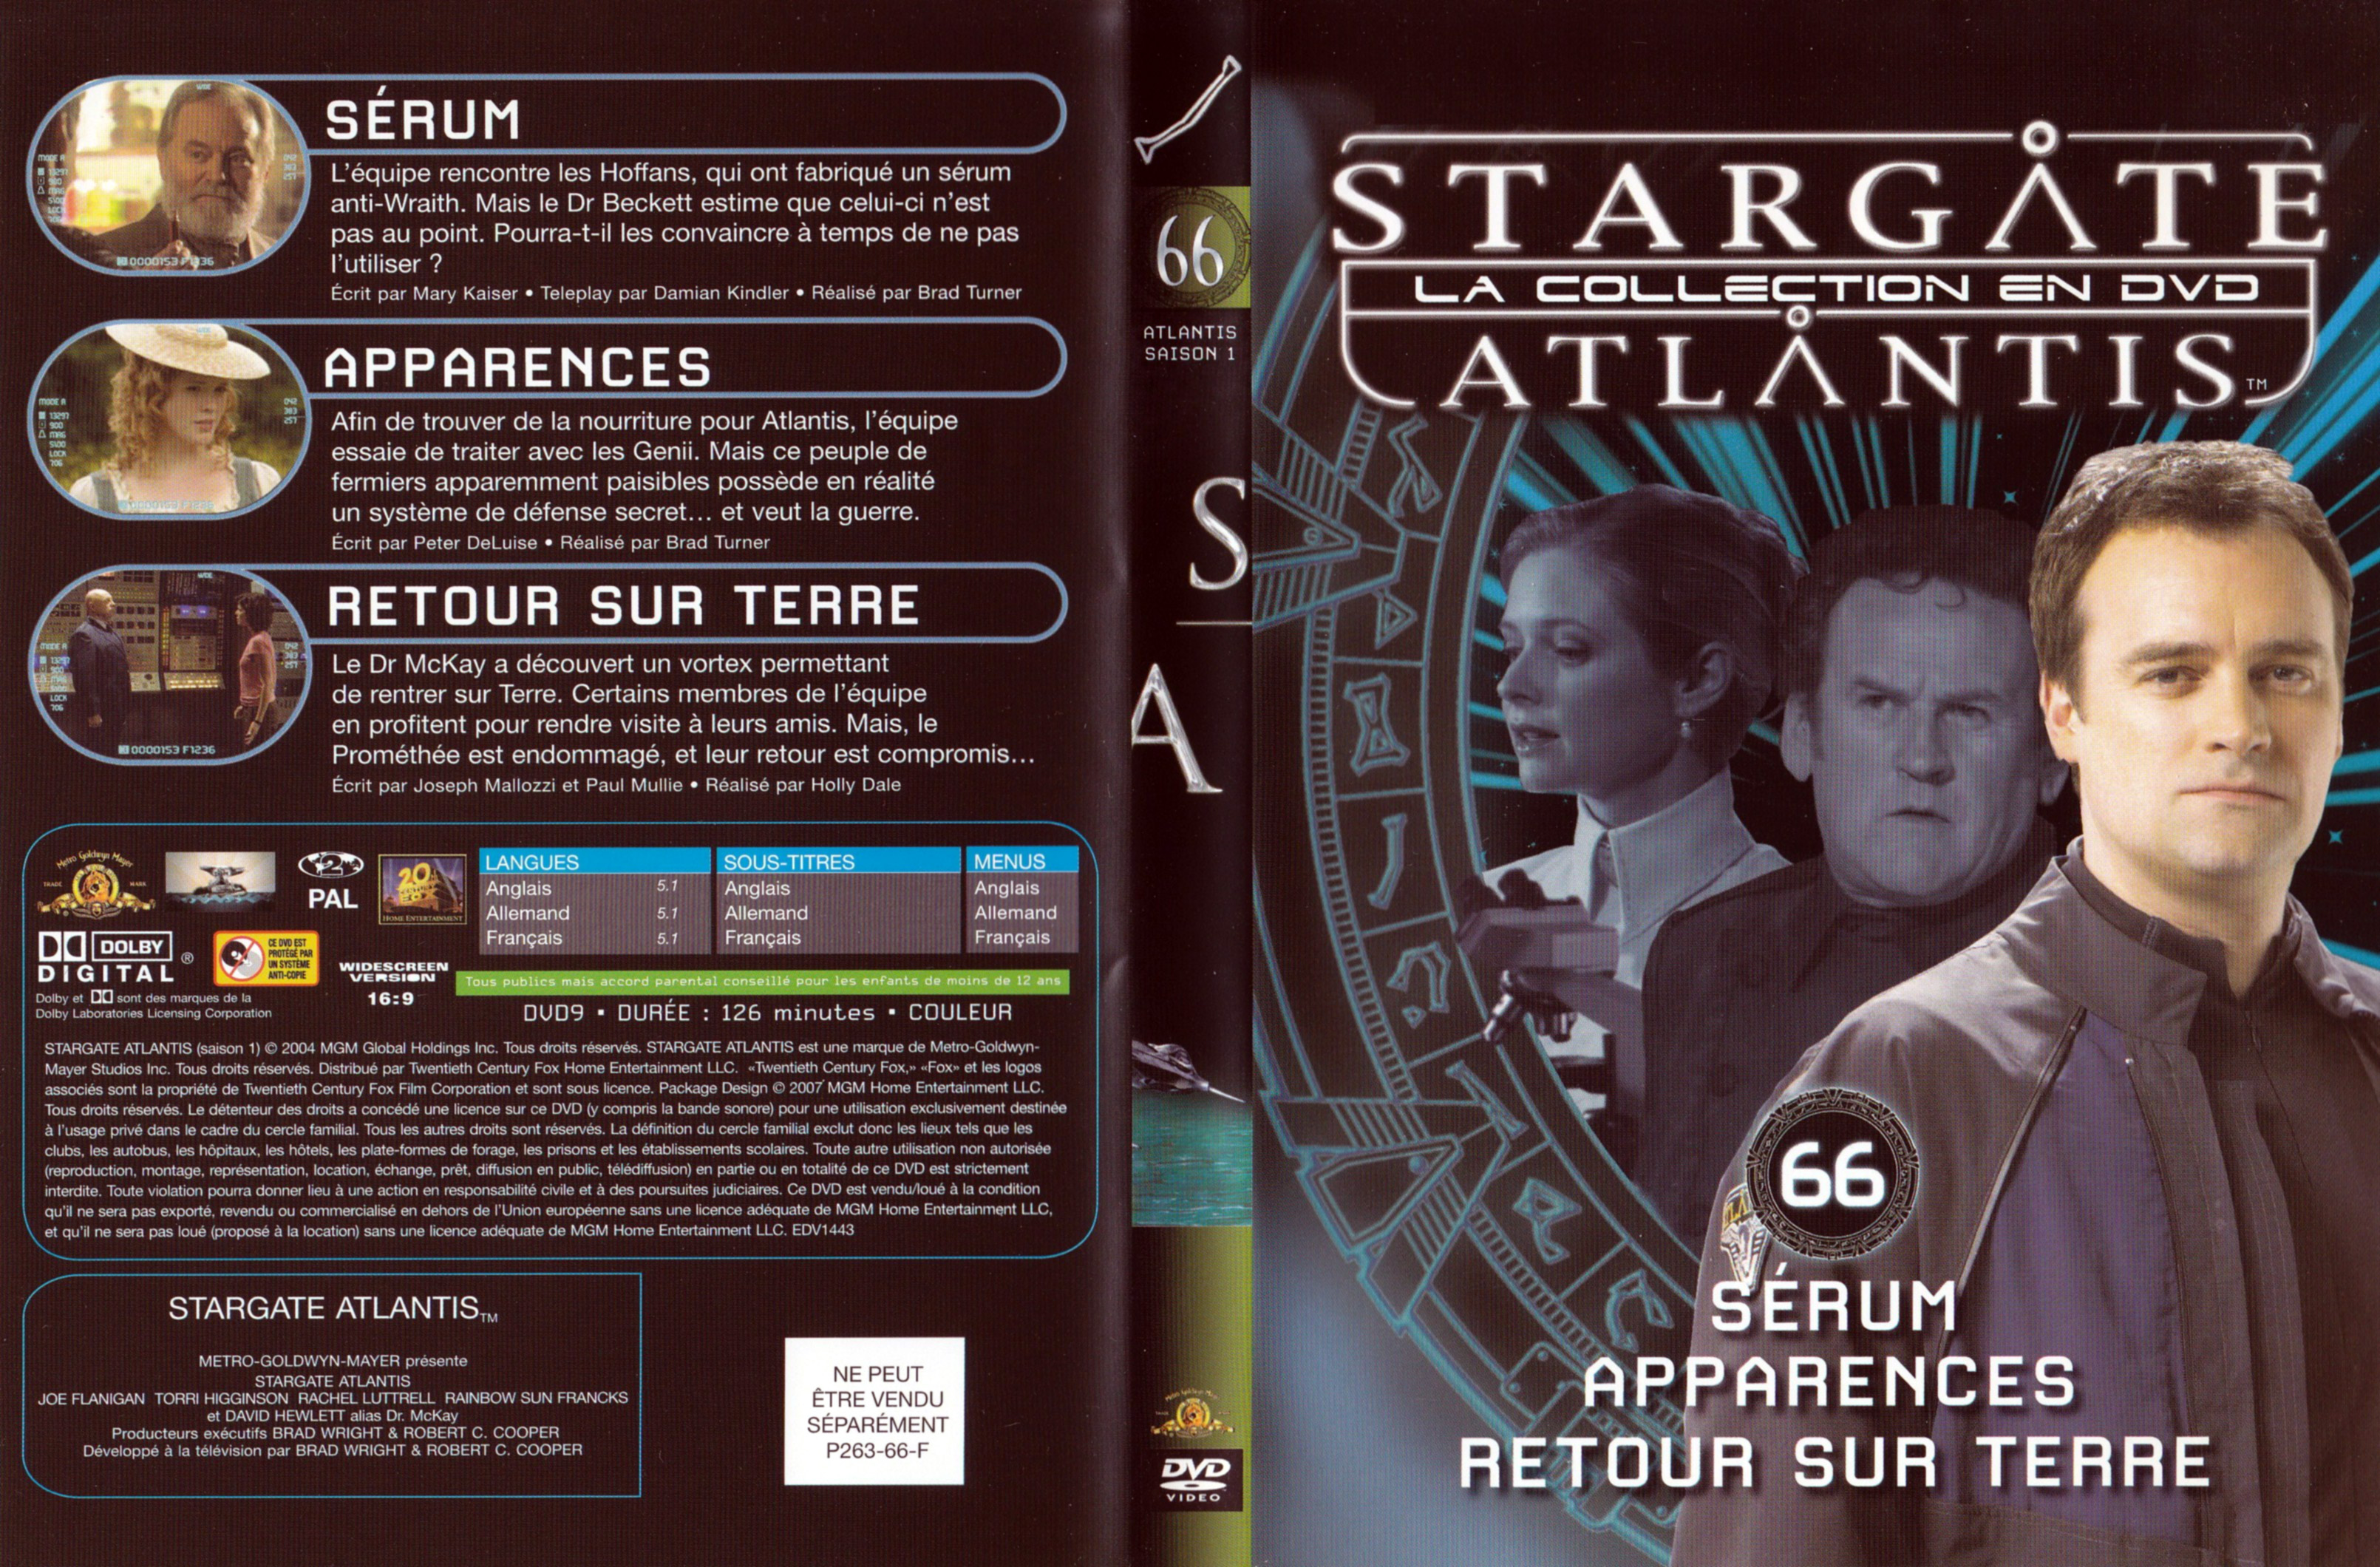 Jaquette DVD Stargate SG1 Atlantis Saison 1 vol 66